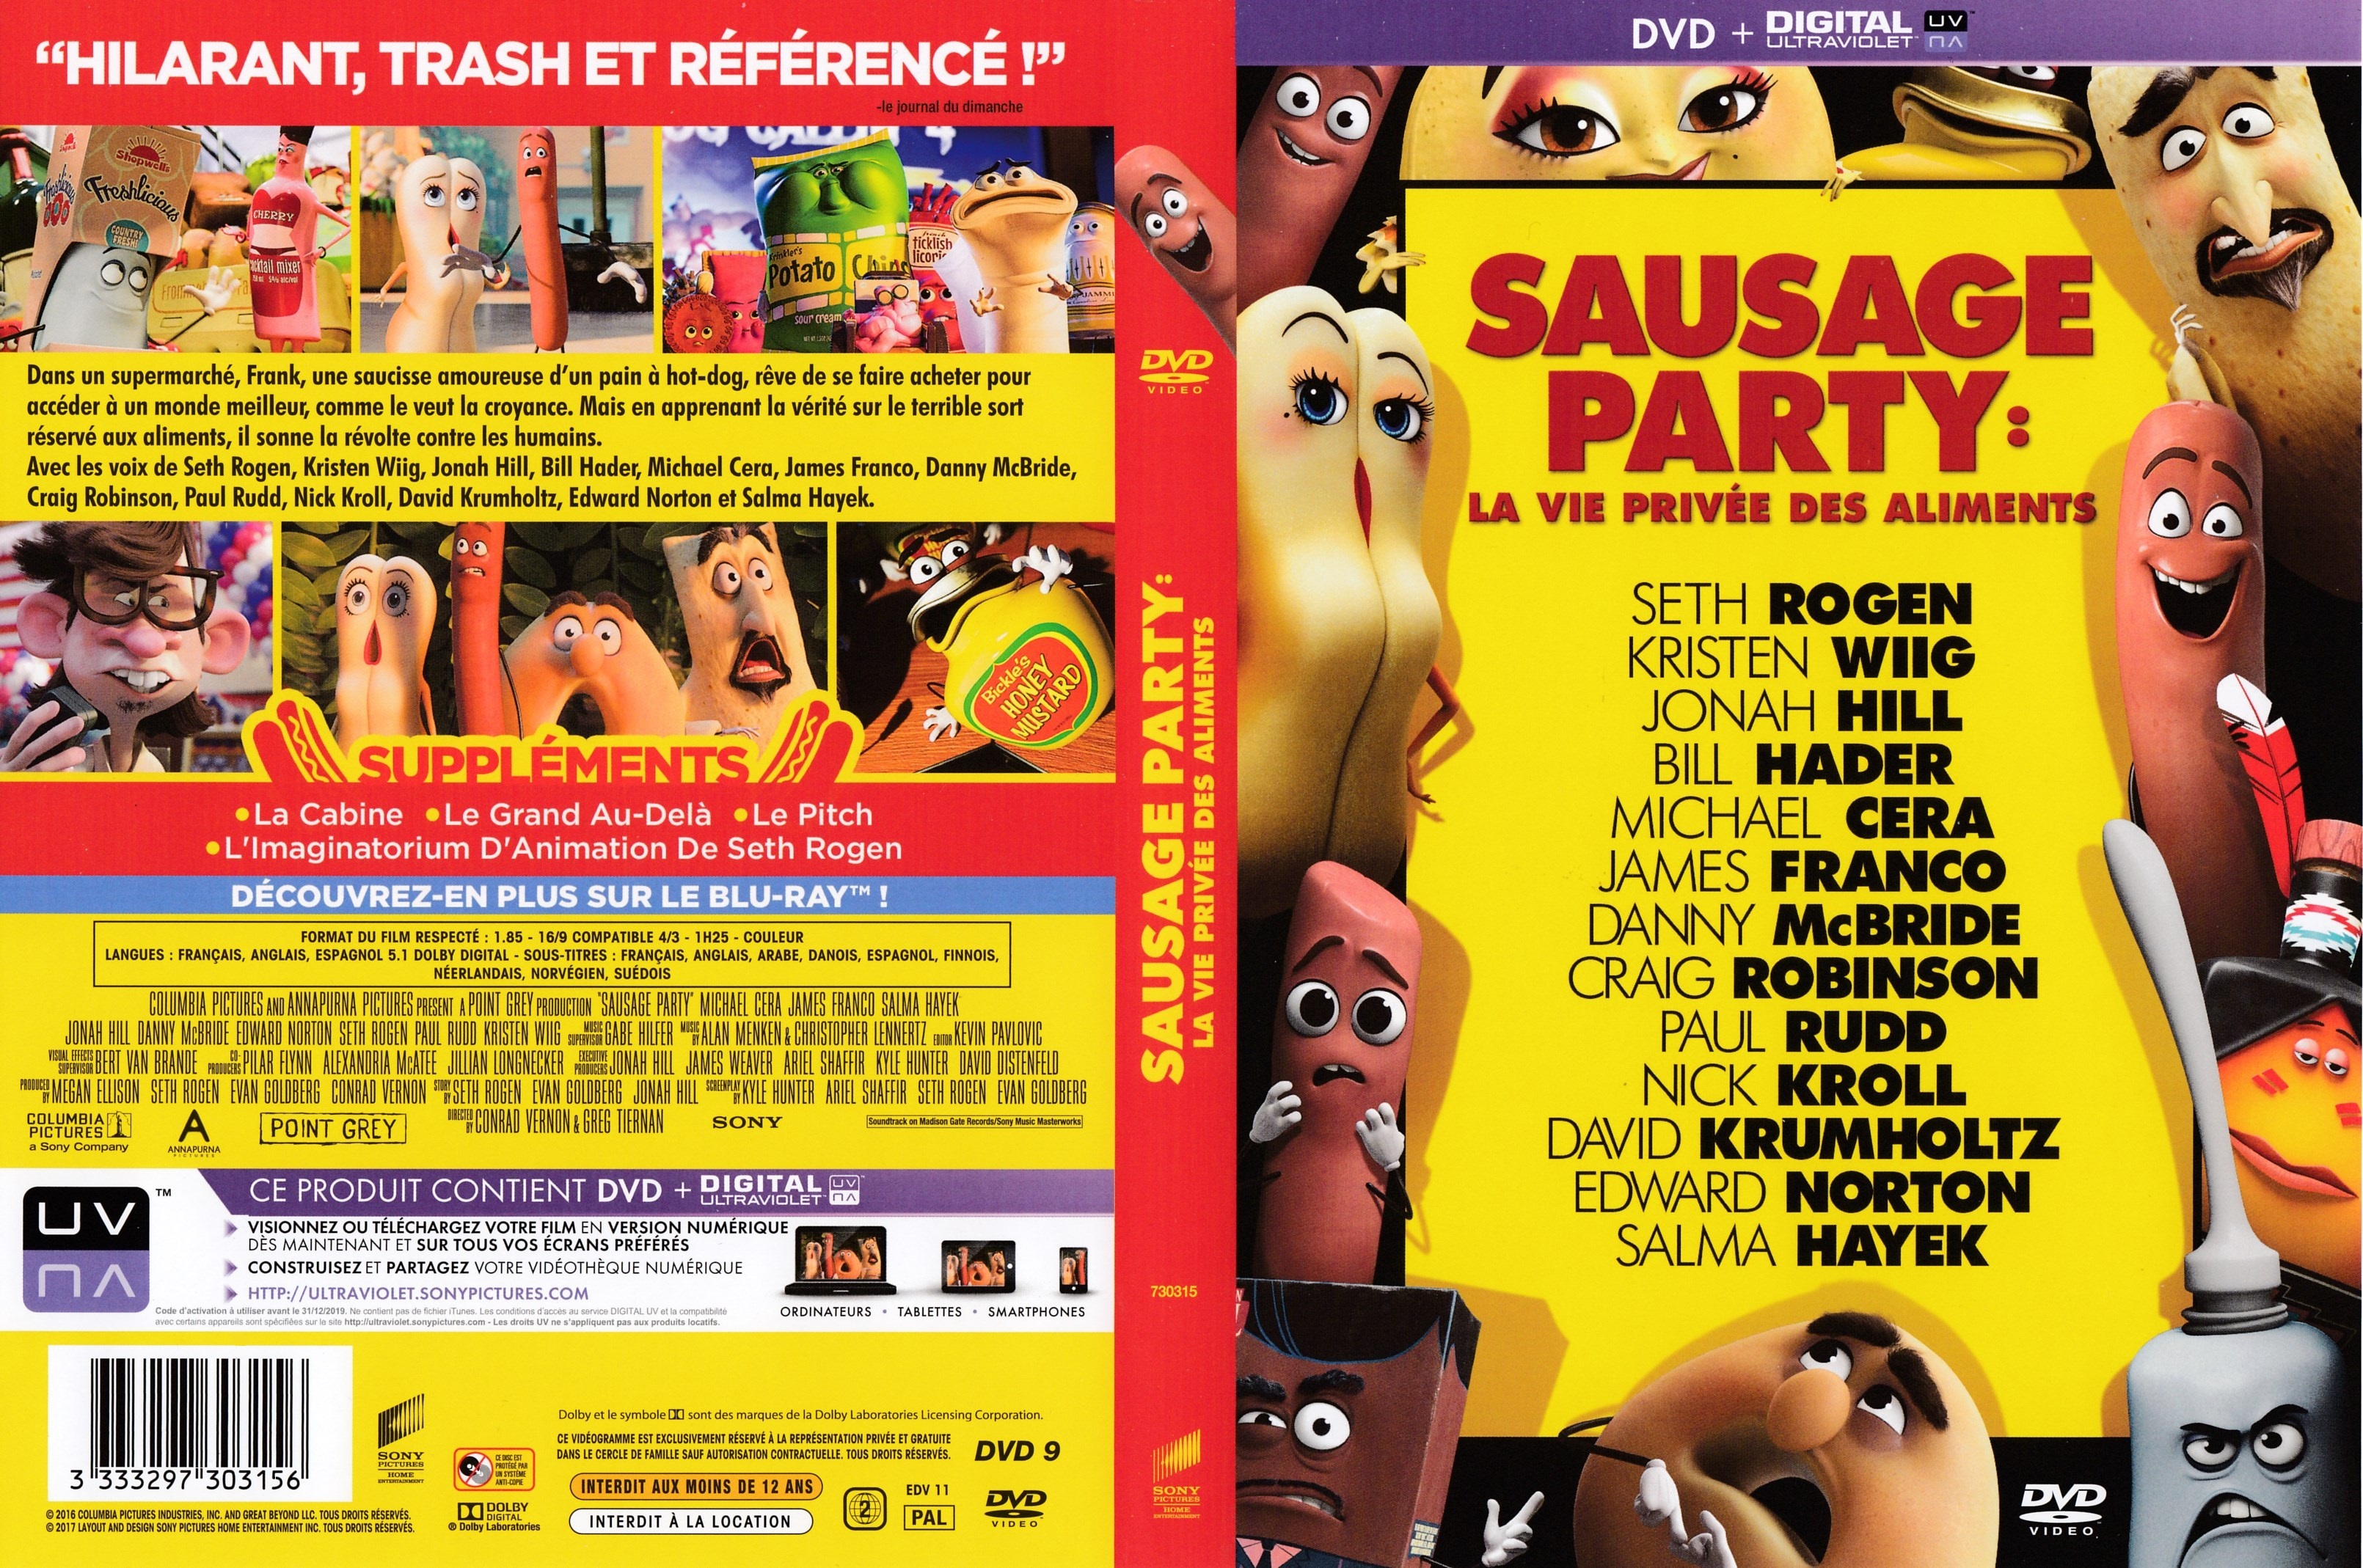 Jaquette DVD Sausage Party - La vie privee des aliments